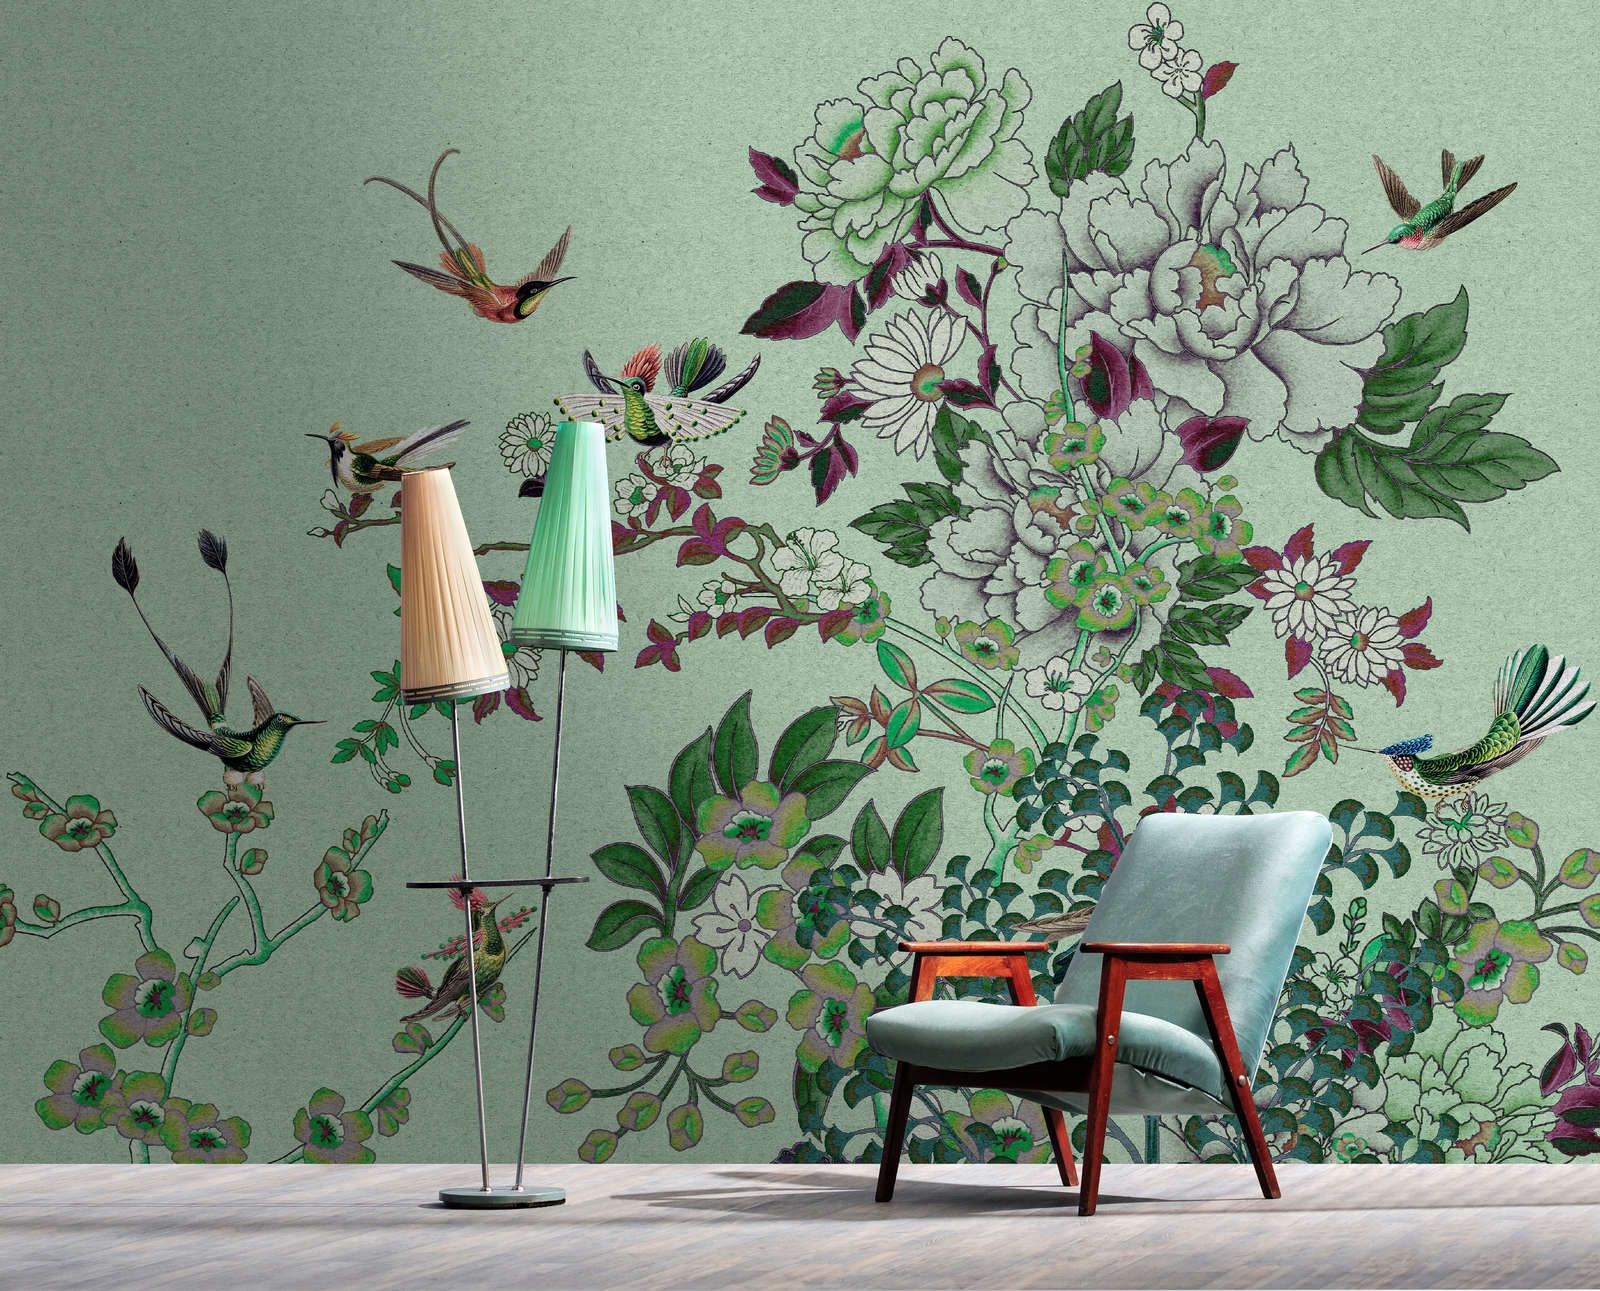             Fotomural »madras 1« - Motivo de flores verdes con pájaros sobre textura de papel kraft - Tela no tejida de textura ligera
        